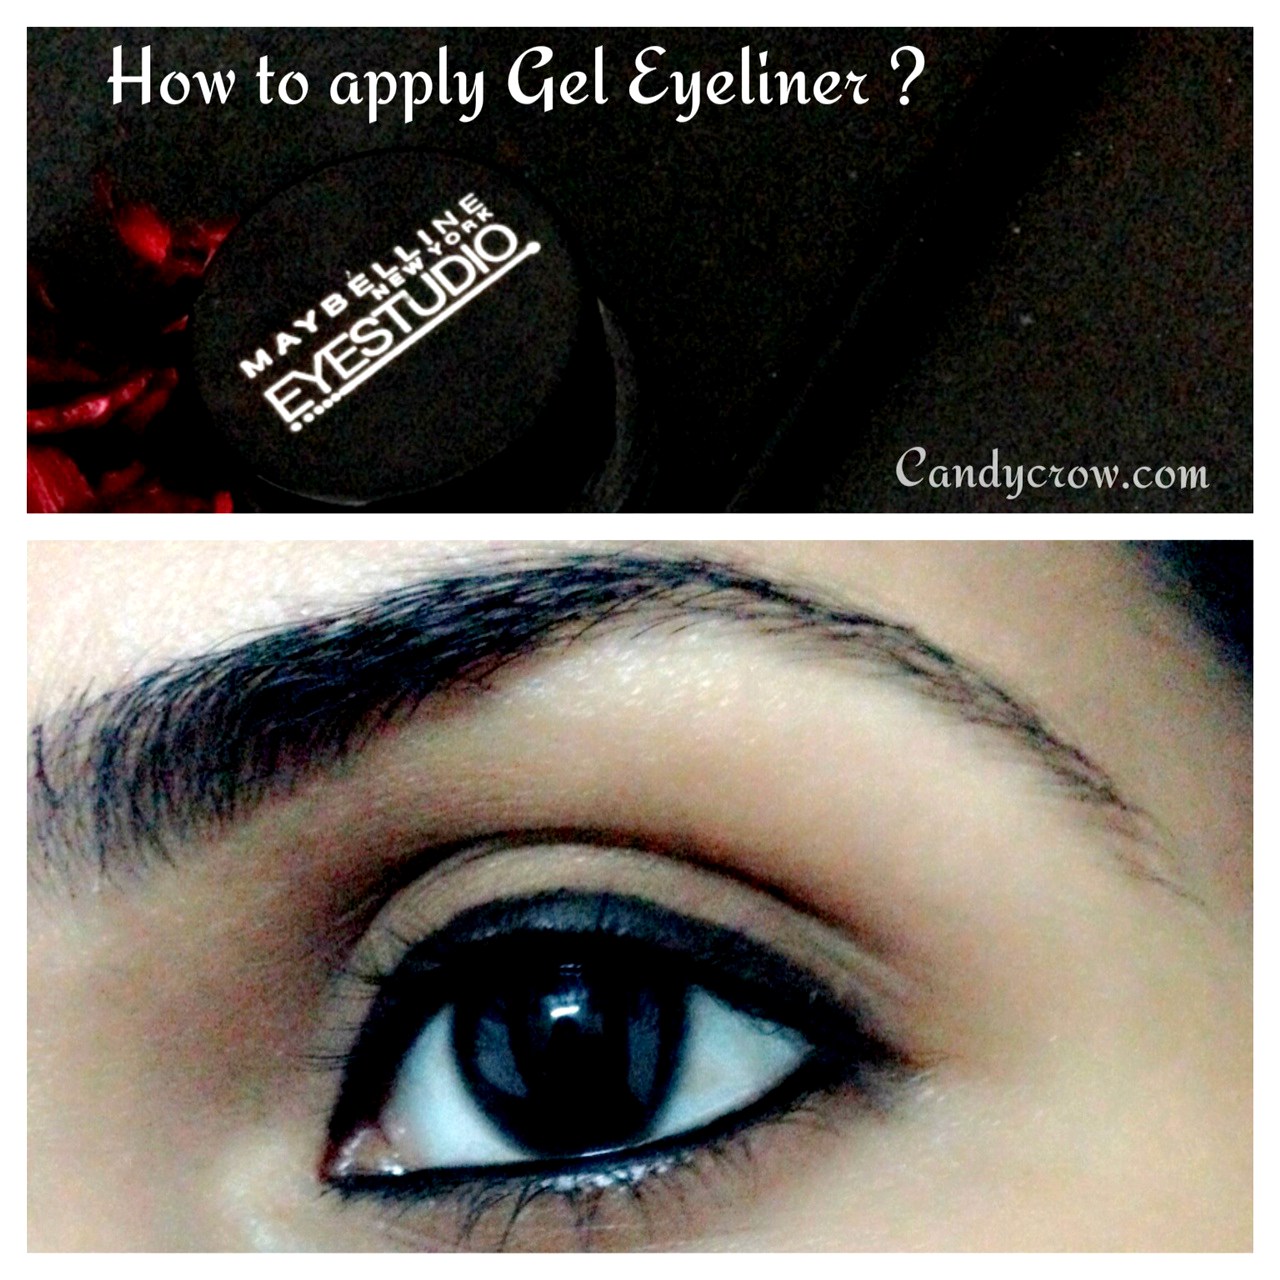 How to Apply Gel Eyeliner?